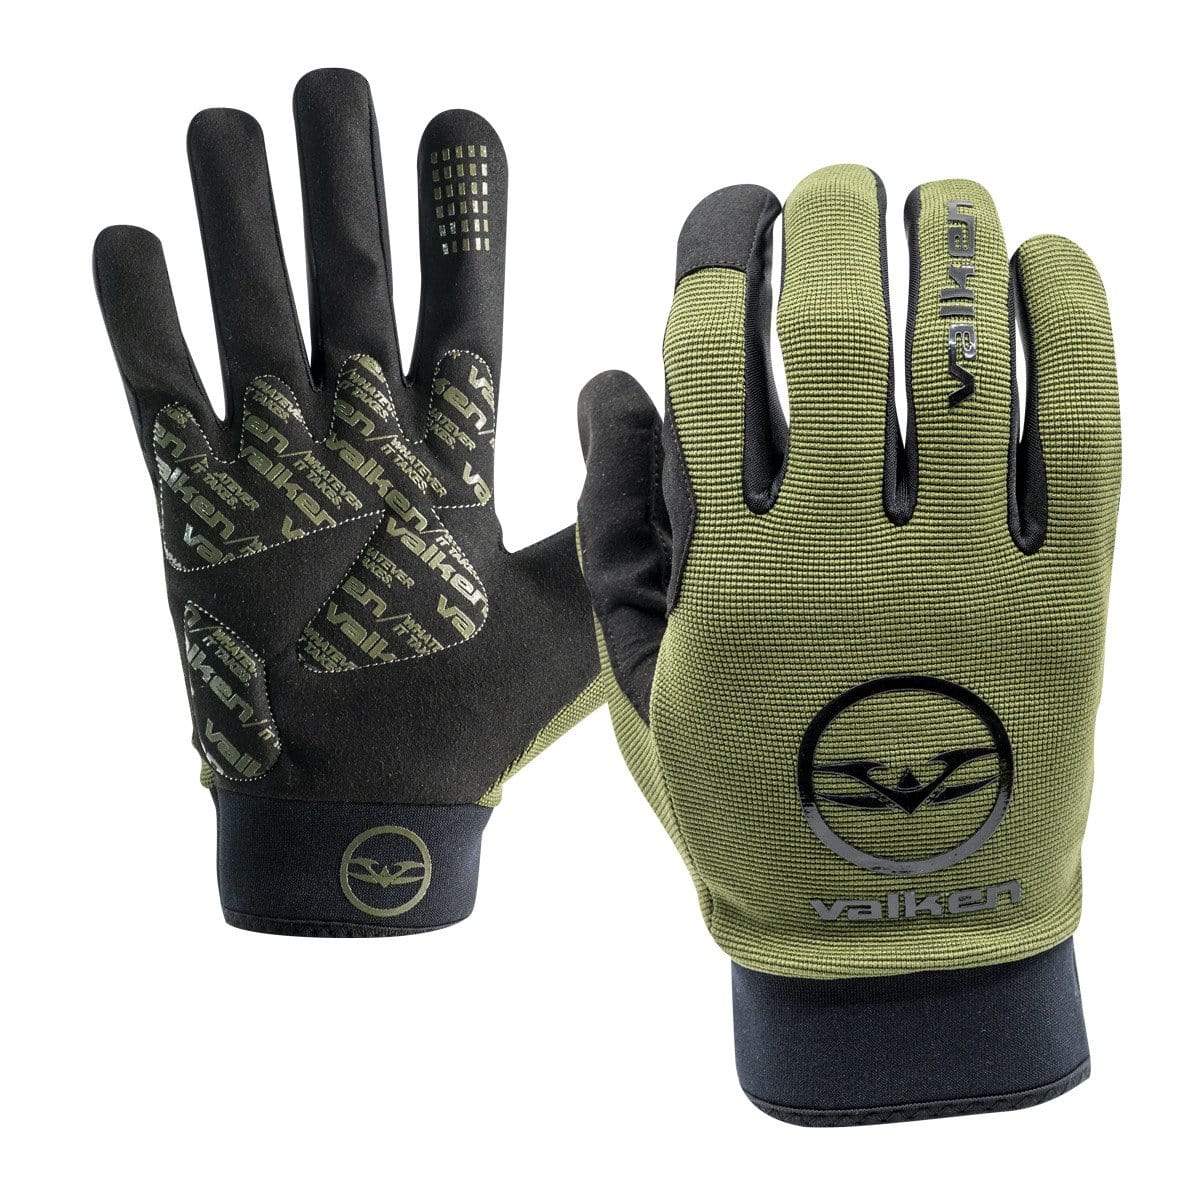 Valken Bravo Full Finger Gloves - Eminent Paintball And Airsoft